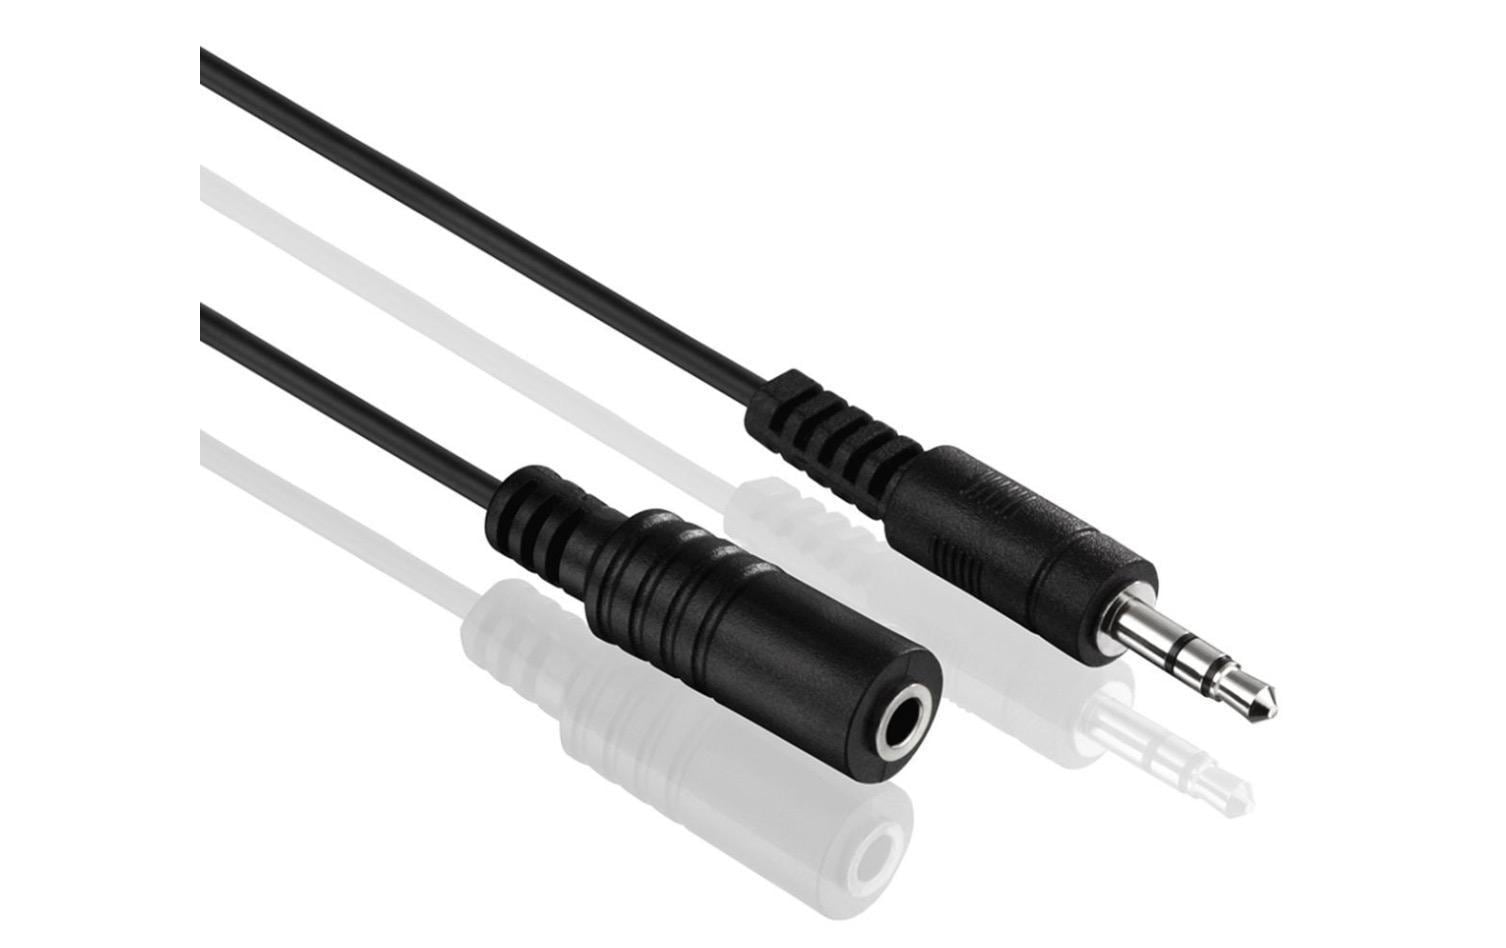 HDGear Audio-Kabel 3.5 mm Klinke - 3.5 mm Klinke 1.5 m